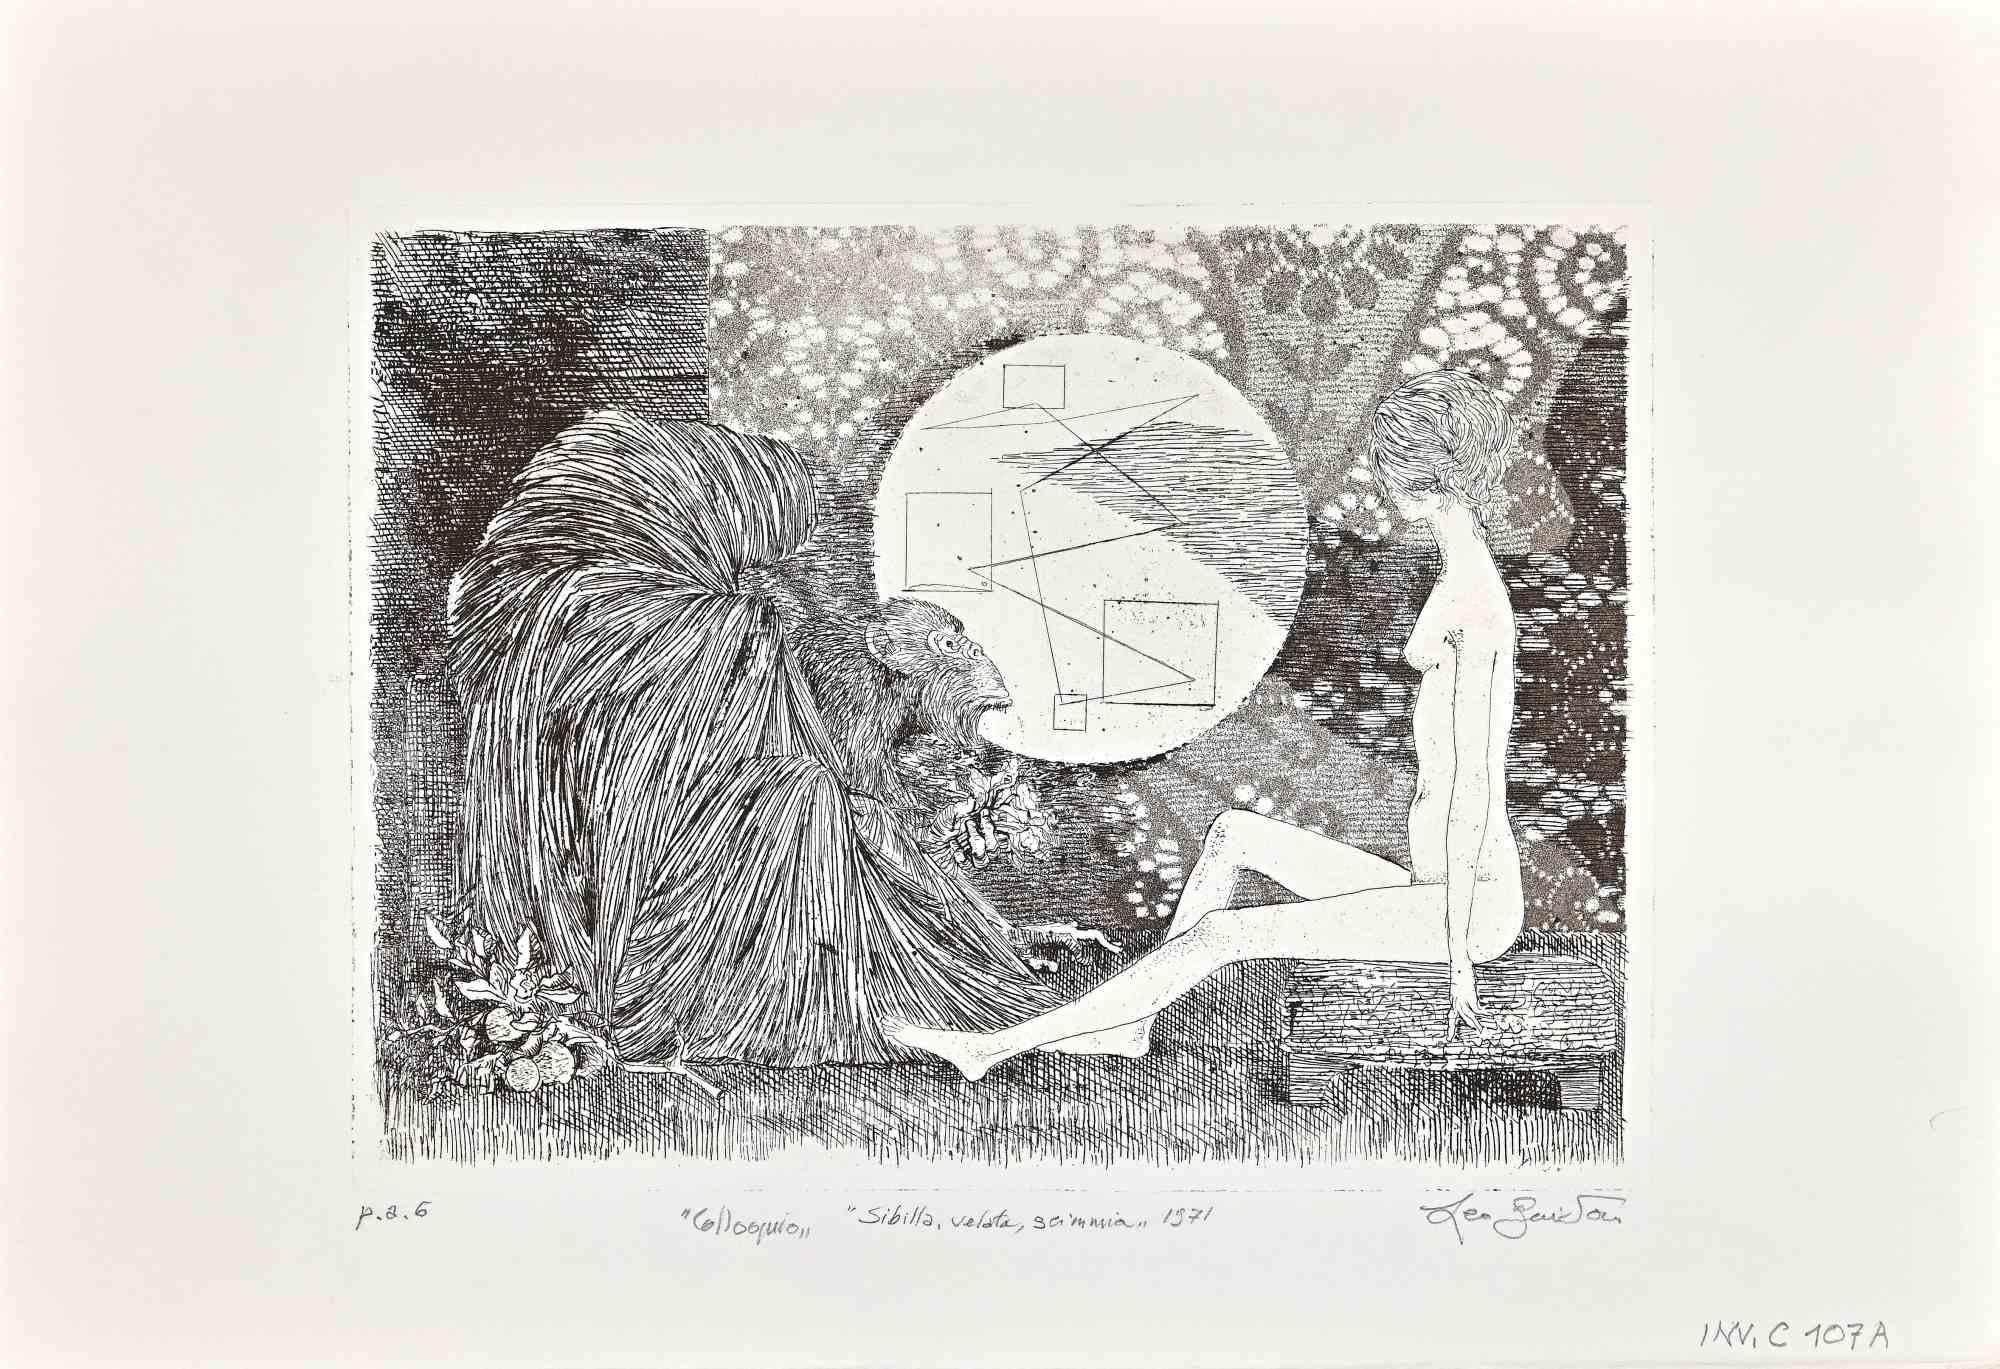 Sybil, verschleiert, Affe ist ein  Radierung von Leo Guida aus den 1971er Jahren.

Guter Zustand, proof artist.

Handsigniert, betitelt und datiert vom Künstler mit Bleistift am unteren Rand.

Als Künstler, der ein Gespür für aktuelle Themen,